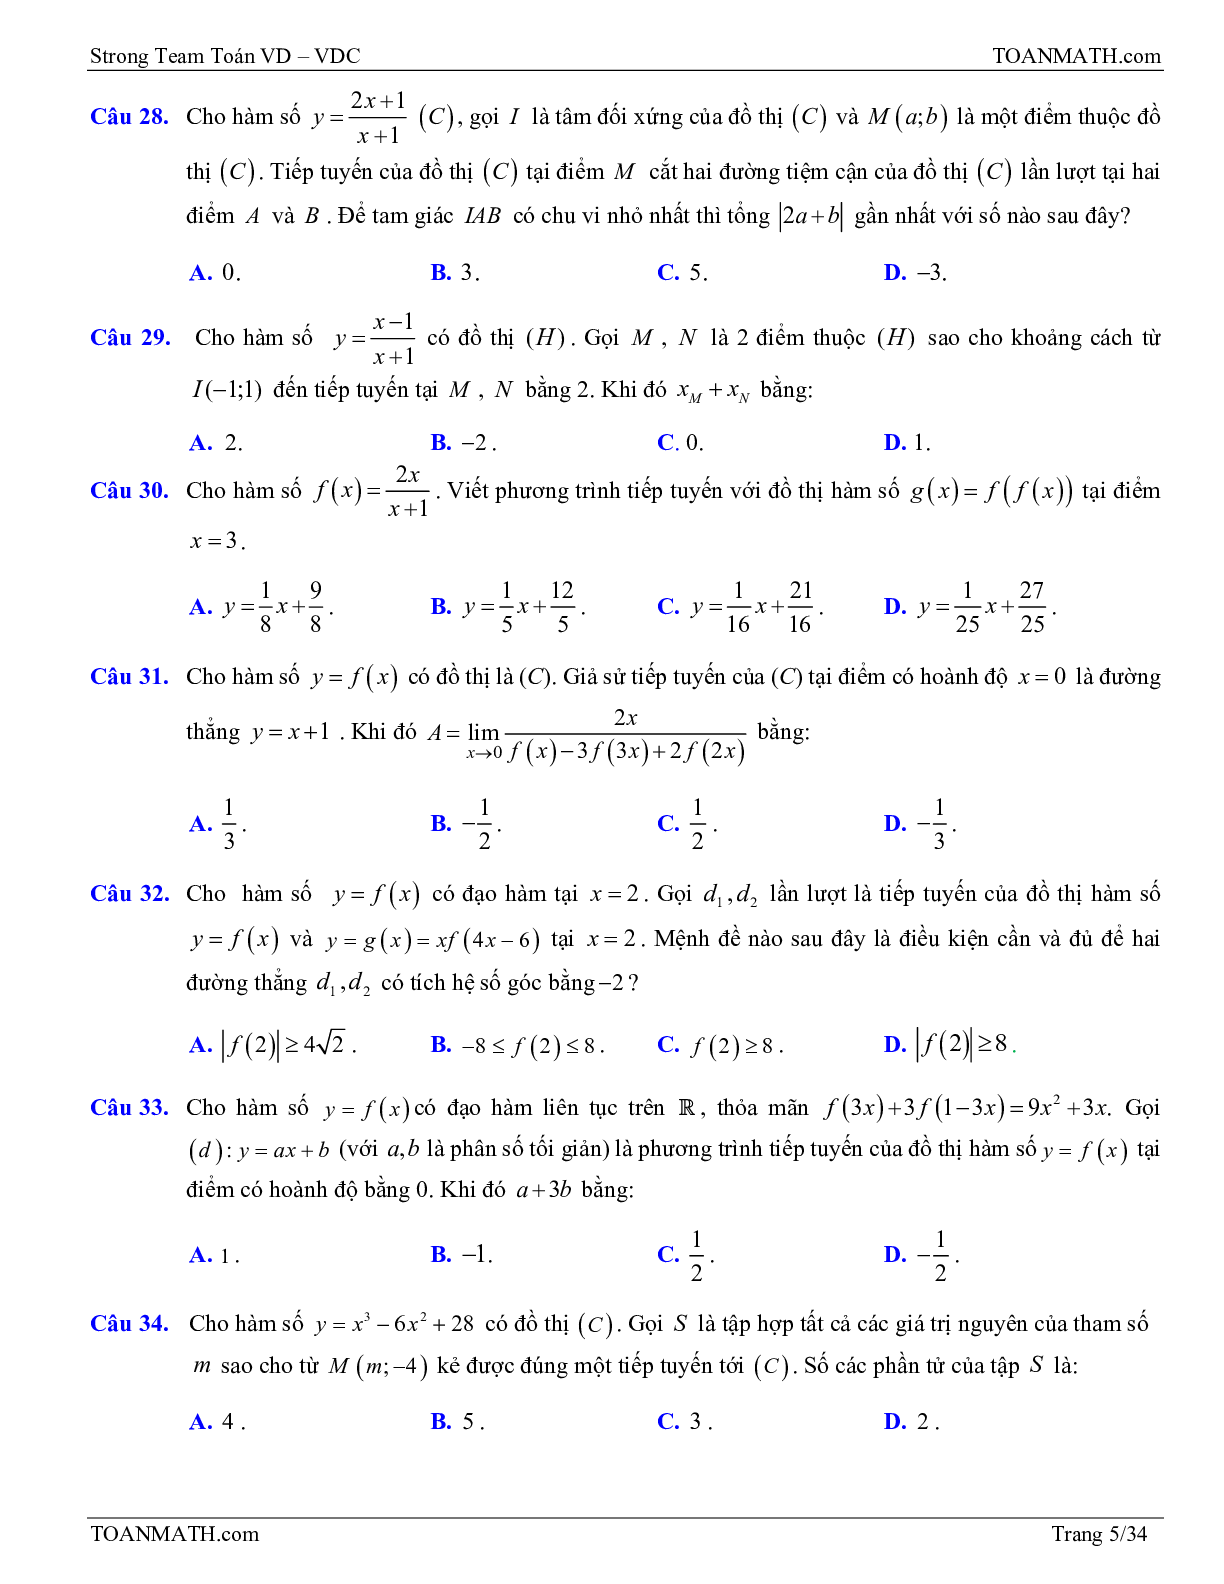 Bài tập VD – VDC tiếp tuyến của đồ thị hàm số có đáp án và lời giải (trang 5)